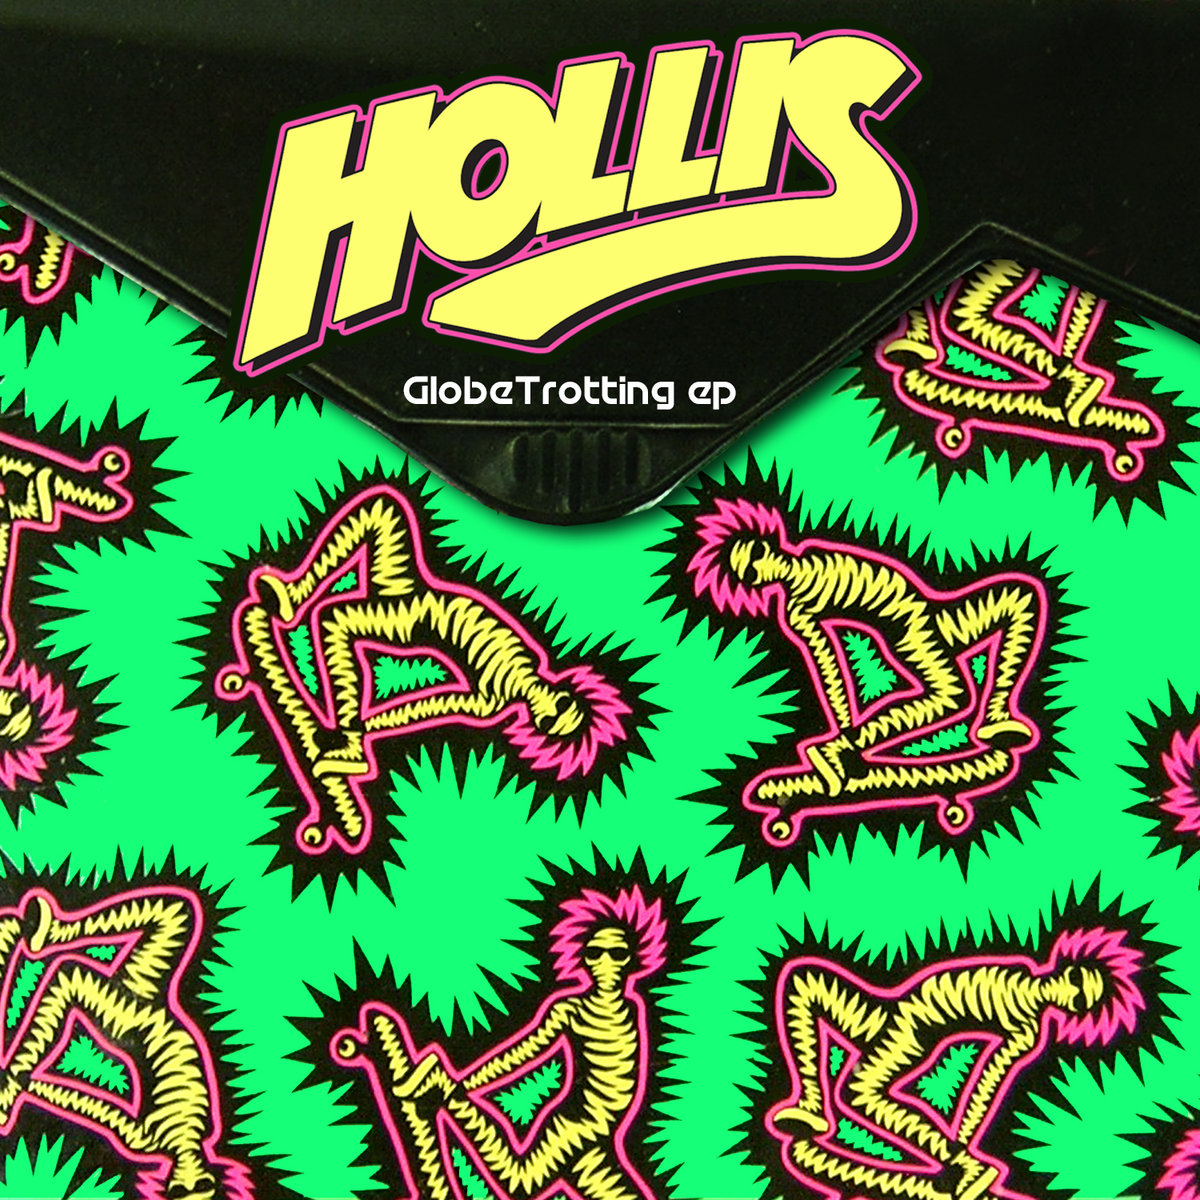 Hollis - Globe Trotting @ 'Globetrotting' album (electronic, dubstep)